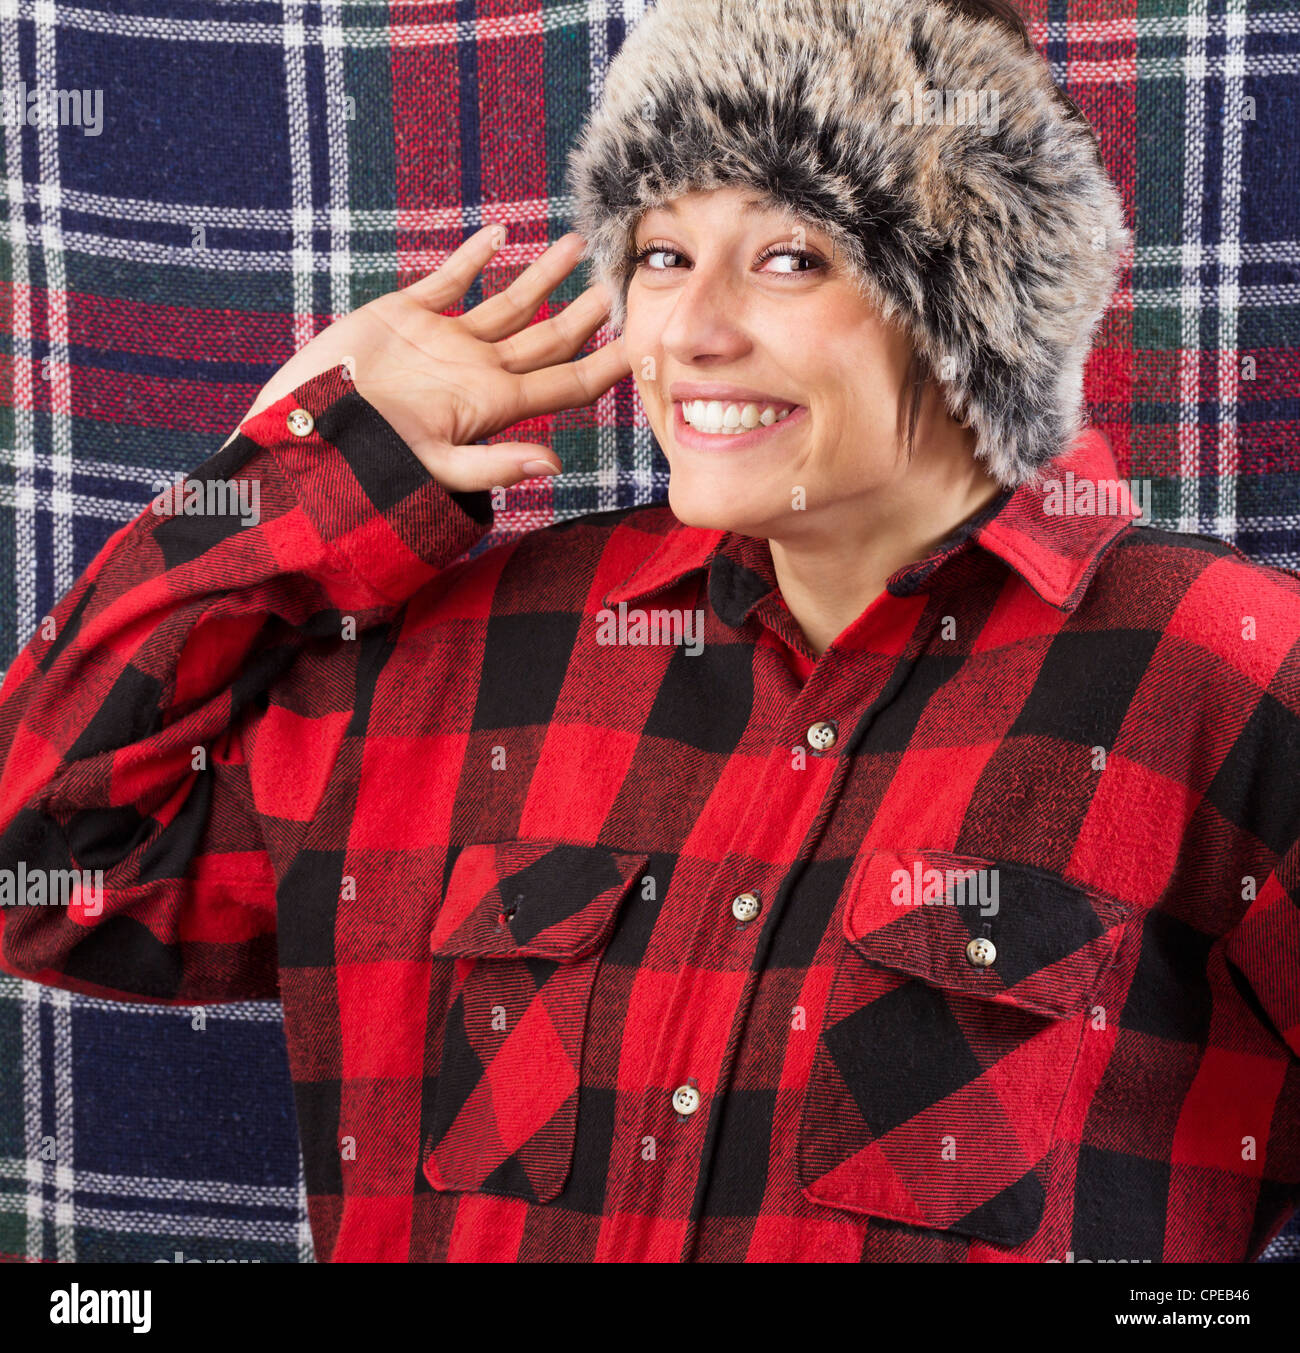 Souriante jeune femme portant chemise bûcheron et fur hat posing et forme avec sa main à l'appareil photo. Funny studio shot Banque D'Images